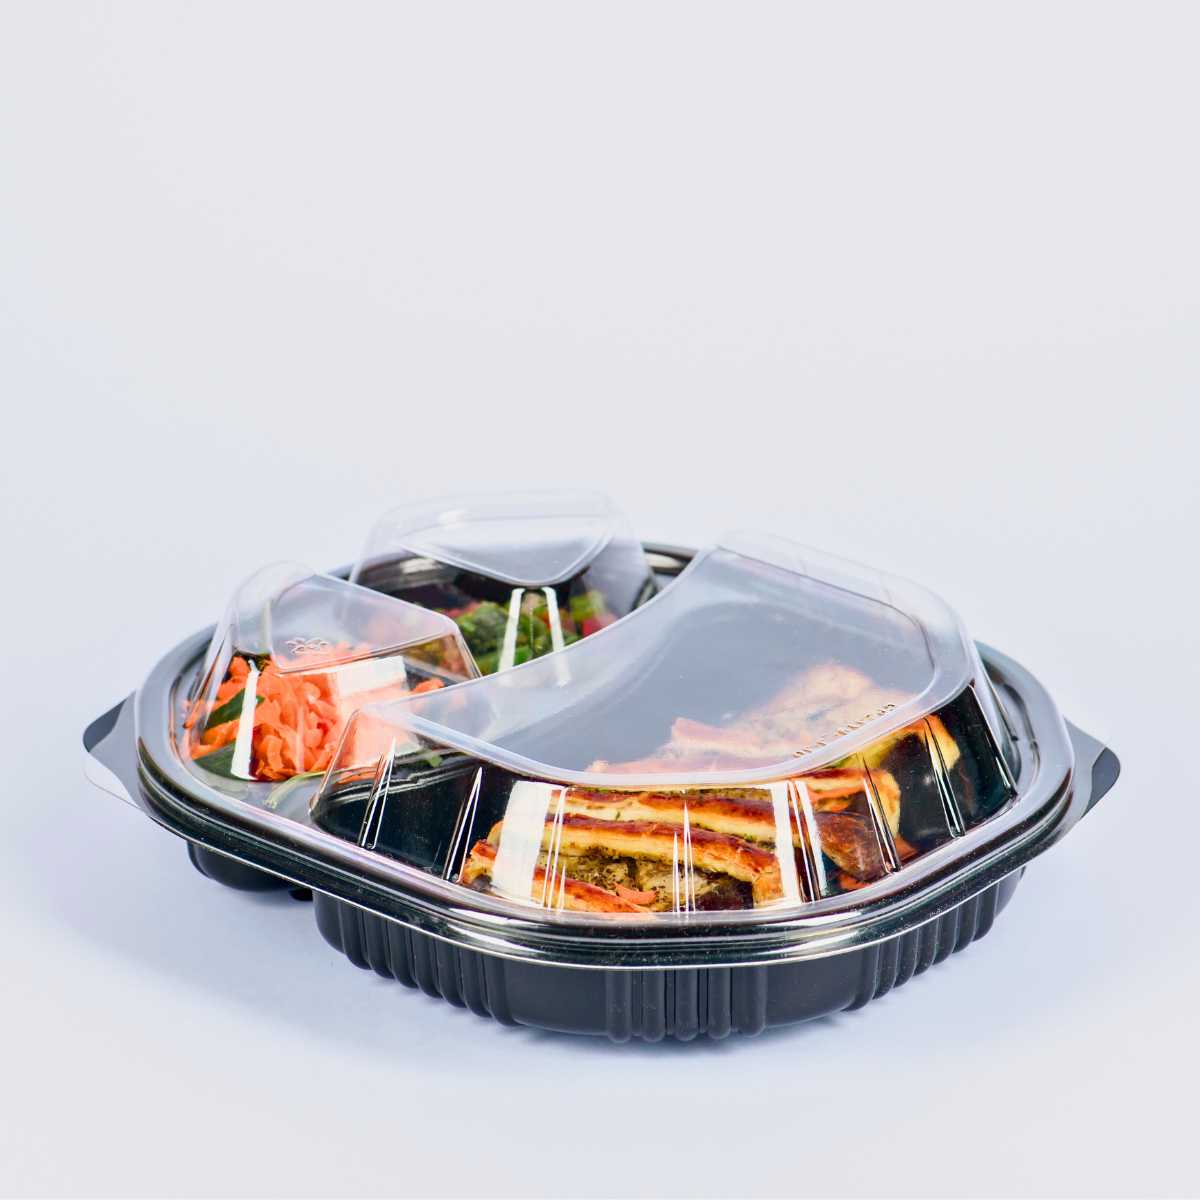 Contenedores de plástico para alimentos [38 onzas] con tapas, paquete de 10  recipientes reutilizables para llevar, recipientes desechables para